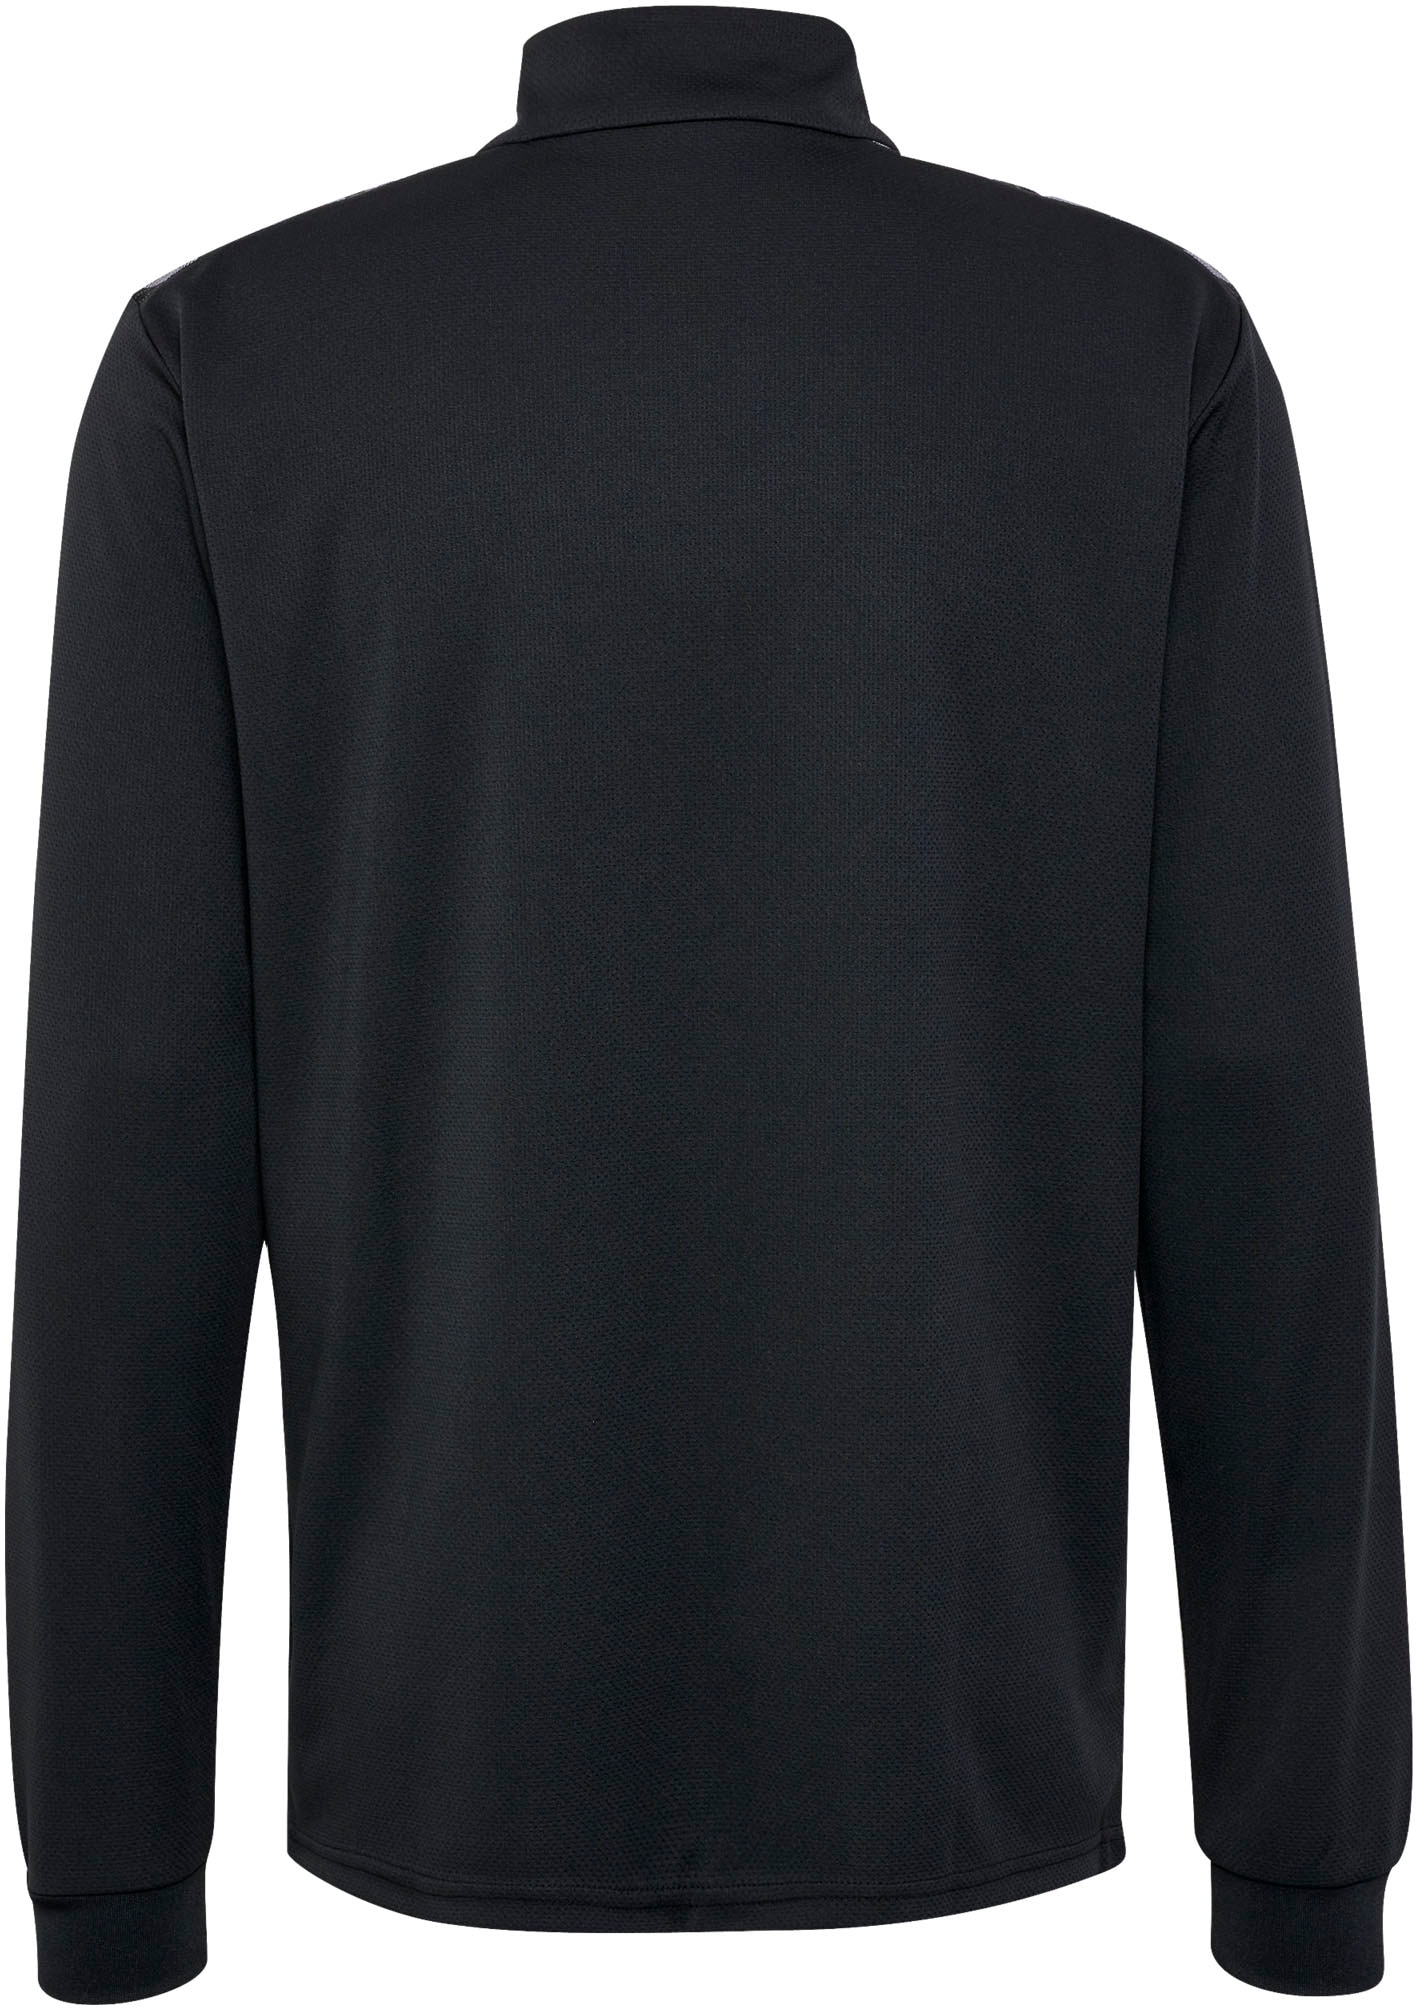 hummel Sweatshirt »HMLAUTHENTIC HALF ZIP SWEAT«, (1 tlg.)